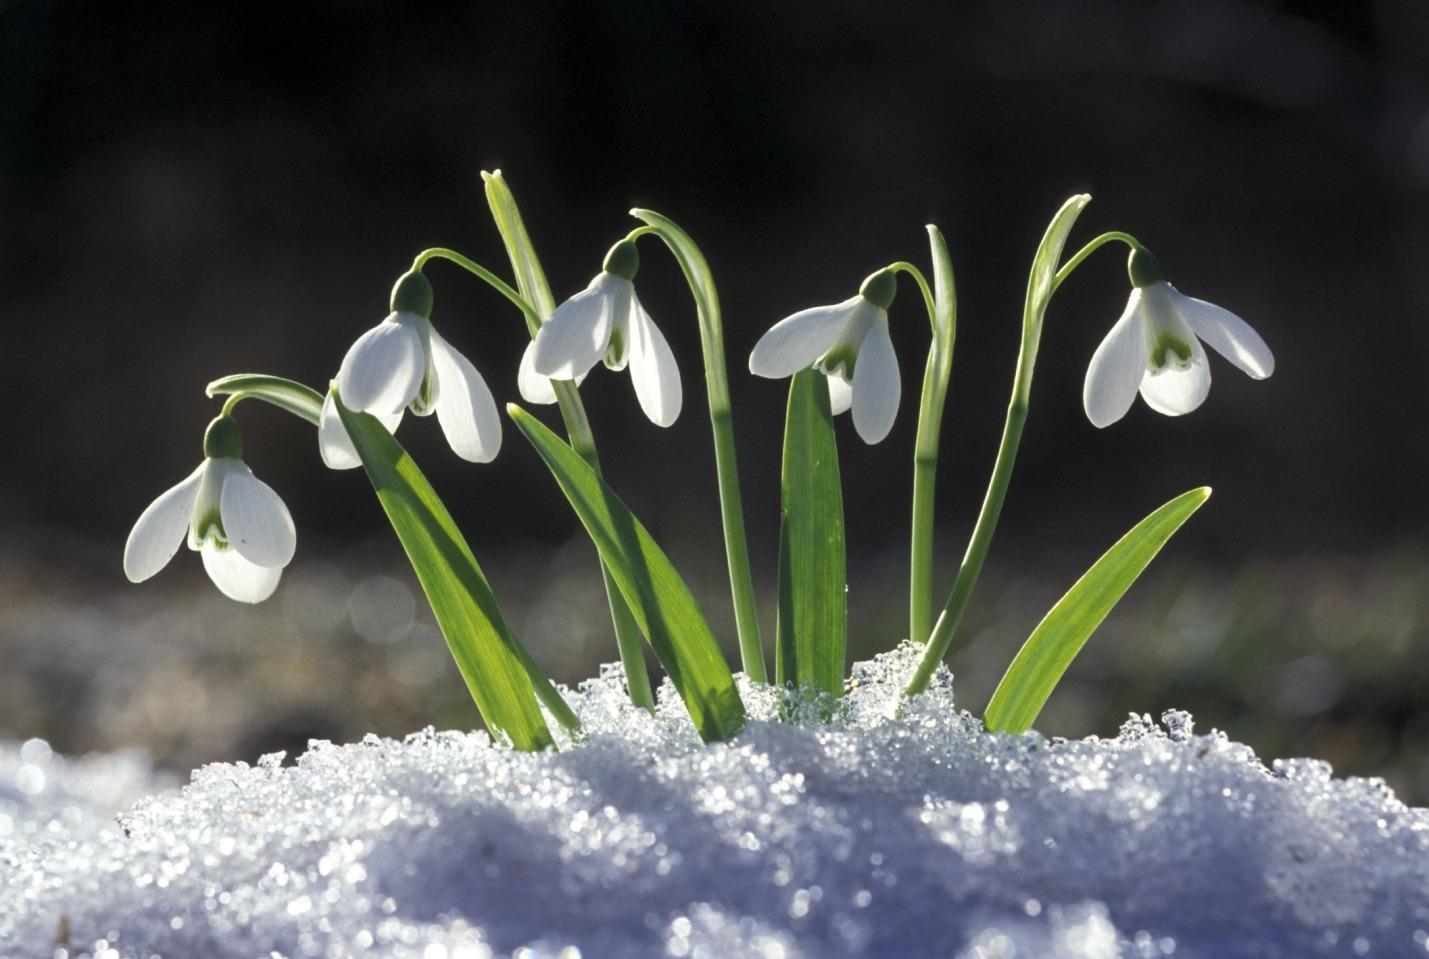 Картинка Весна подснежники » Весенние цветы » Цветы » Картинки 24 - скачать  картинки бесплатно